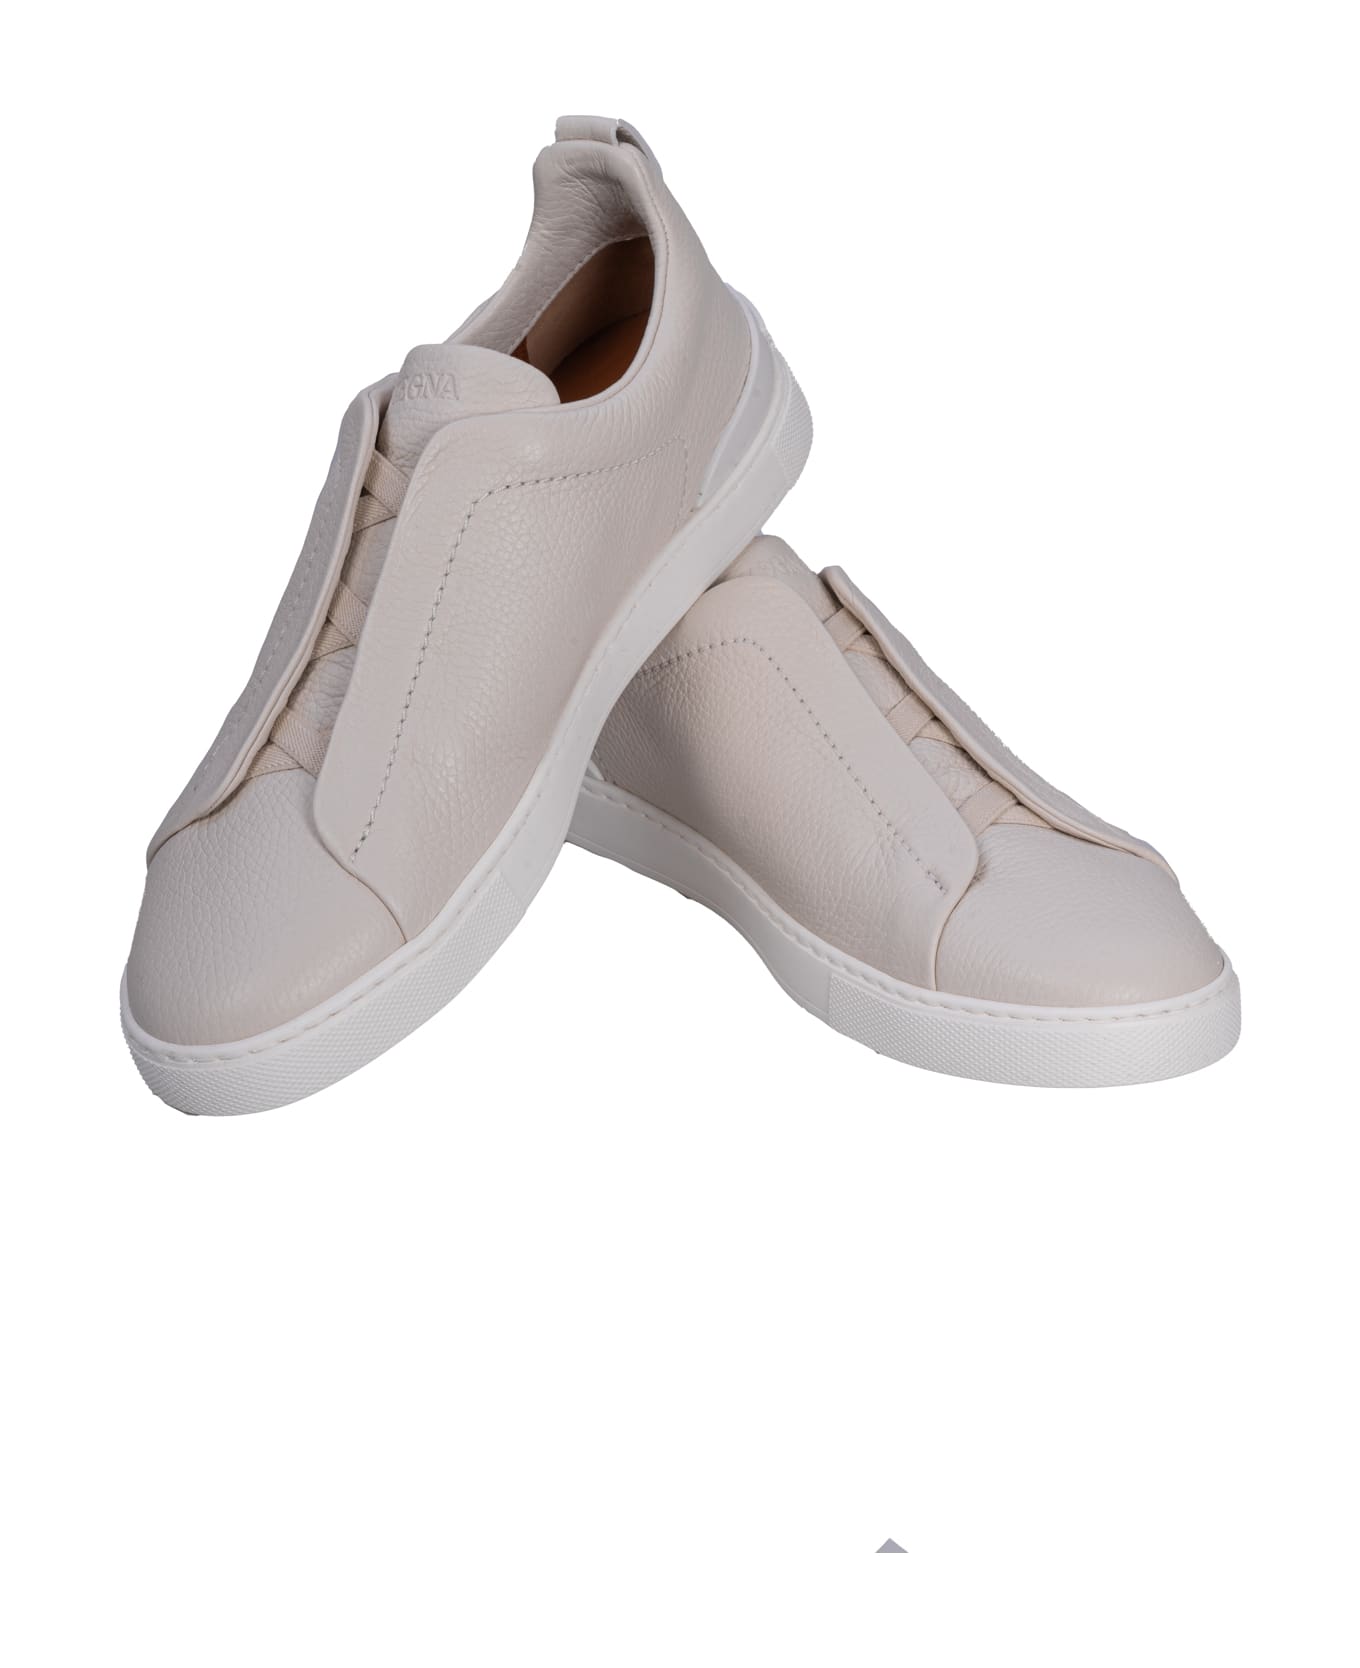 Zegna Flat Shoes White - White スニーカー